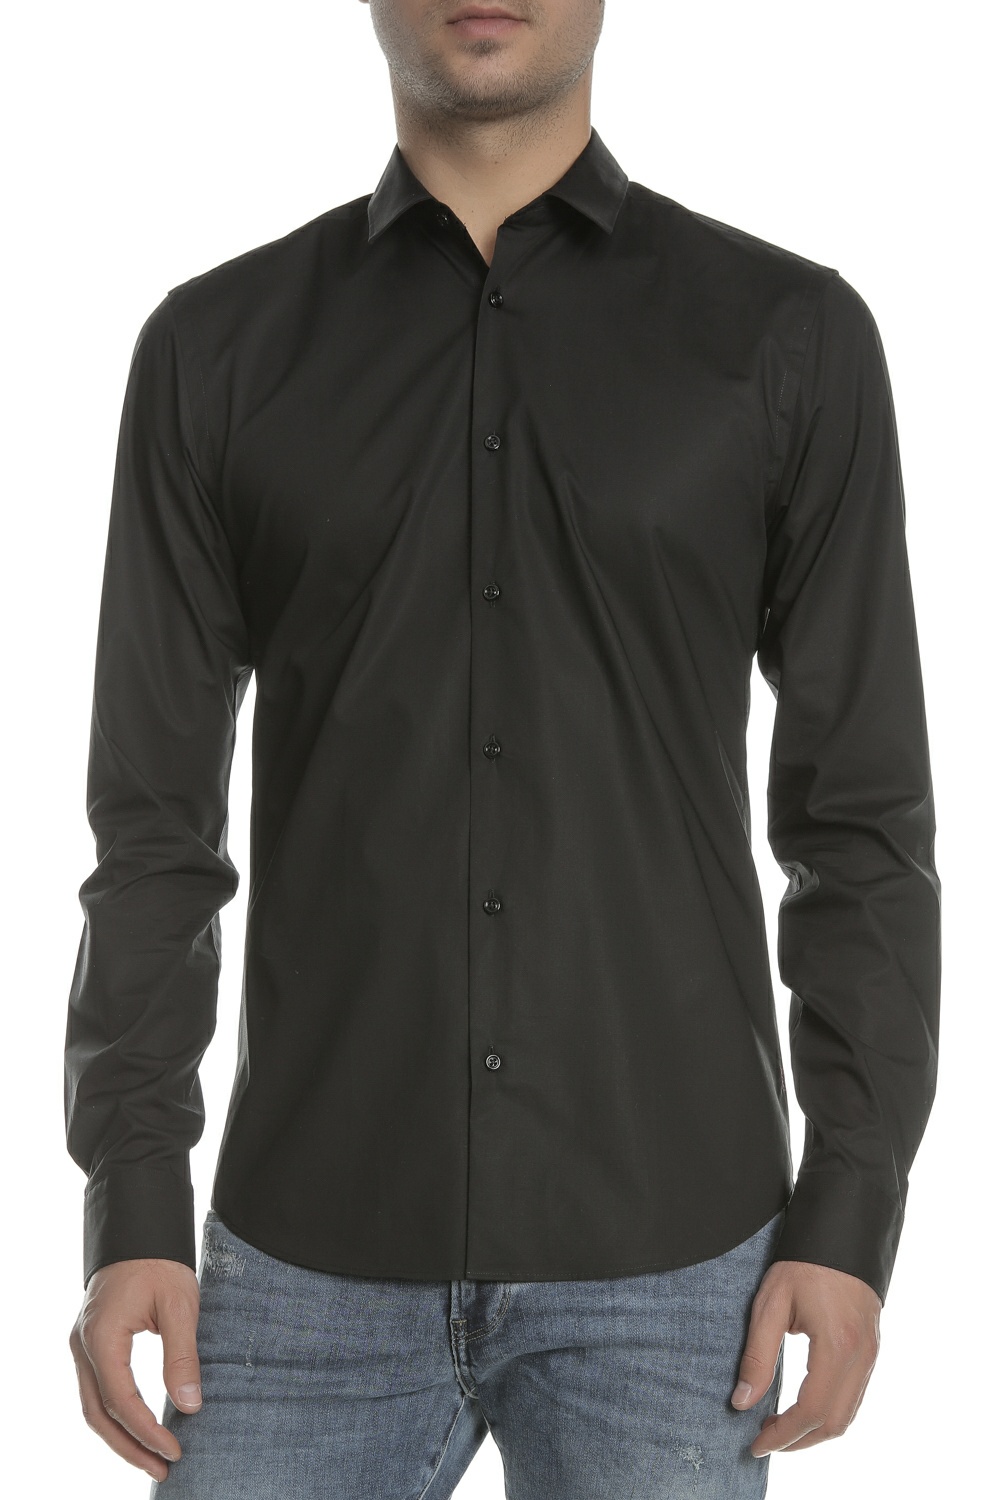 SCOTCH & SODA SCOTCH & SODA - Ανδρικό πουκάμισο SLIM FIT - Classic cotton/elas μαύρο